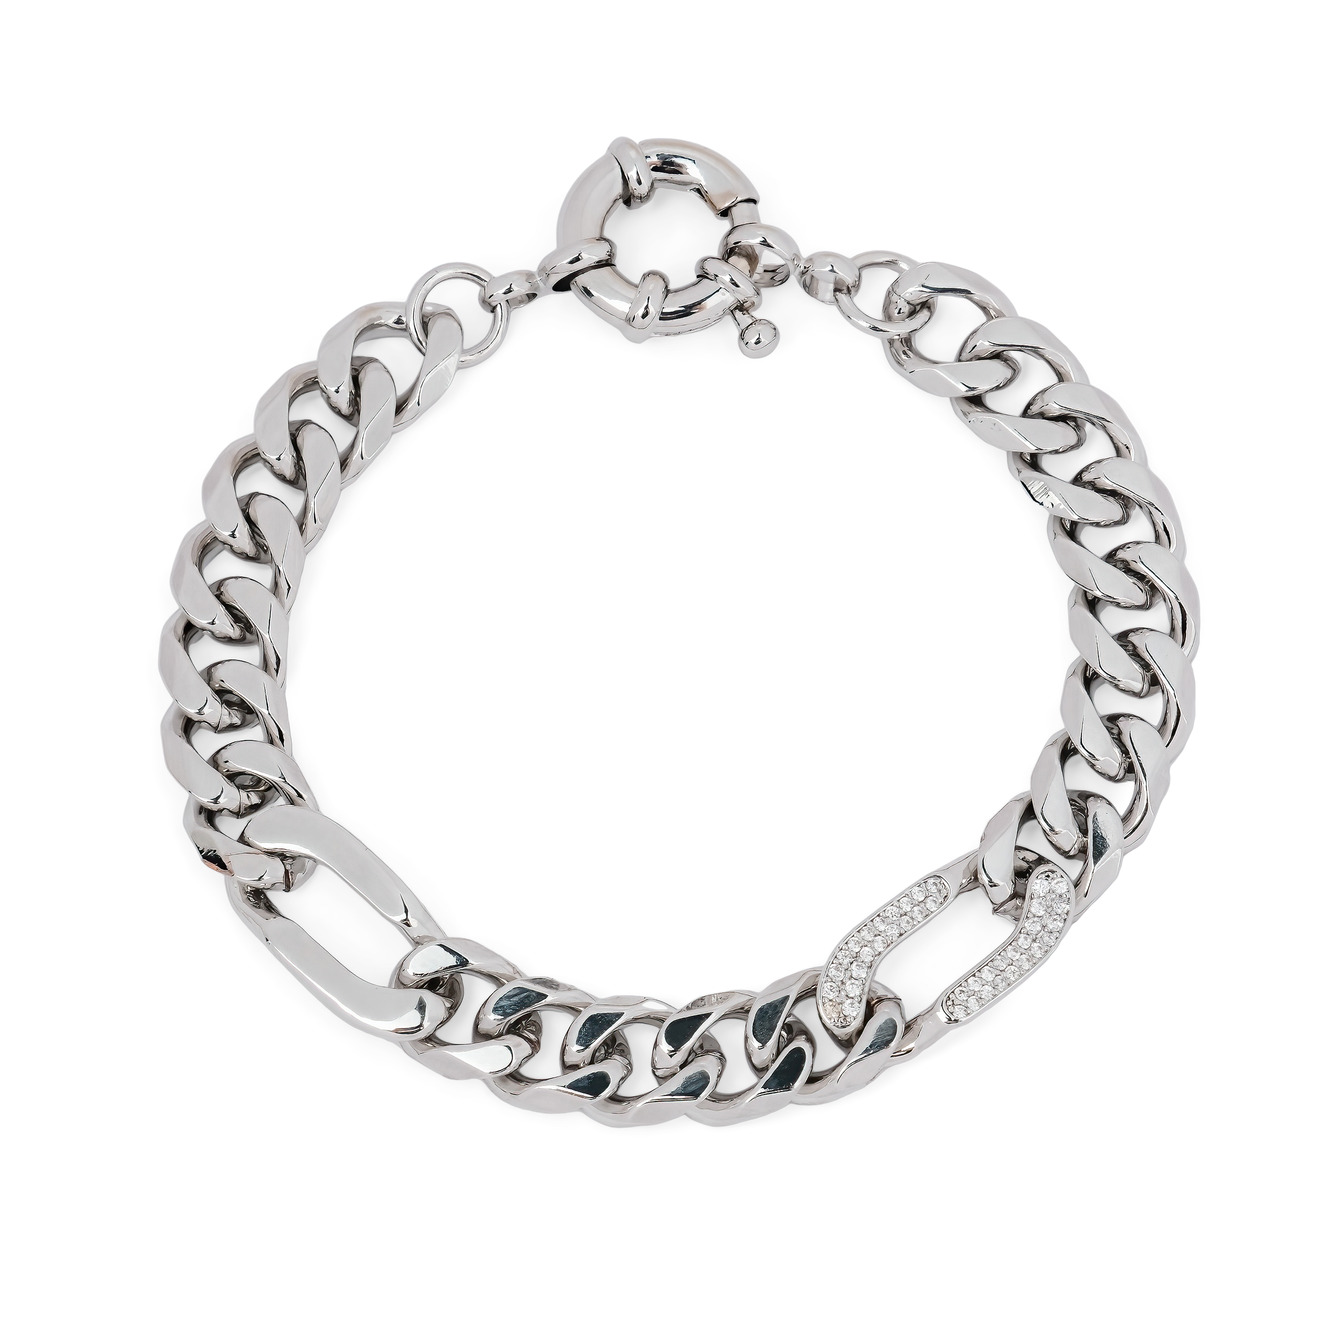 Herald Percy Серебристый браслет-цепь со звеньями из кристаллов